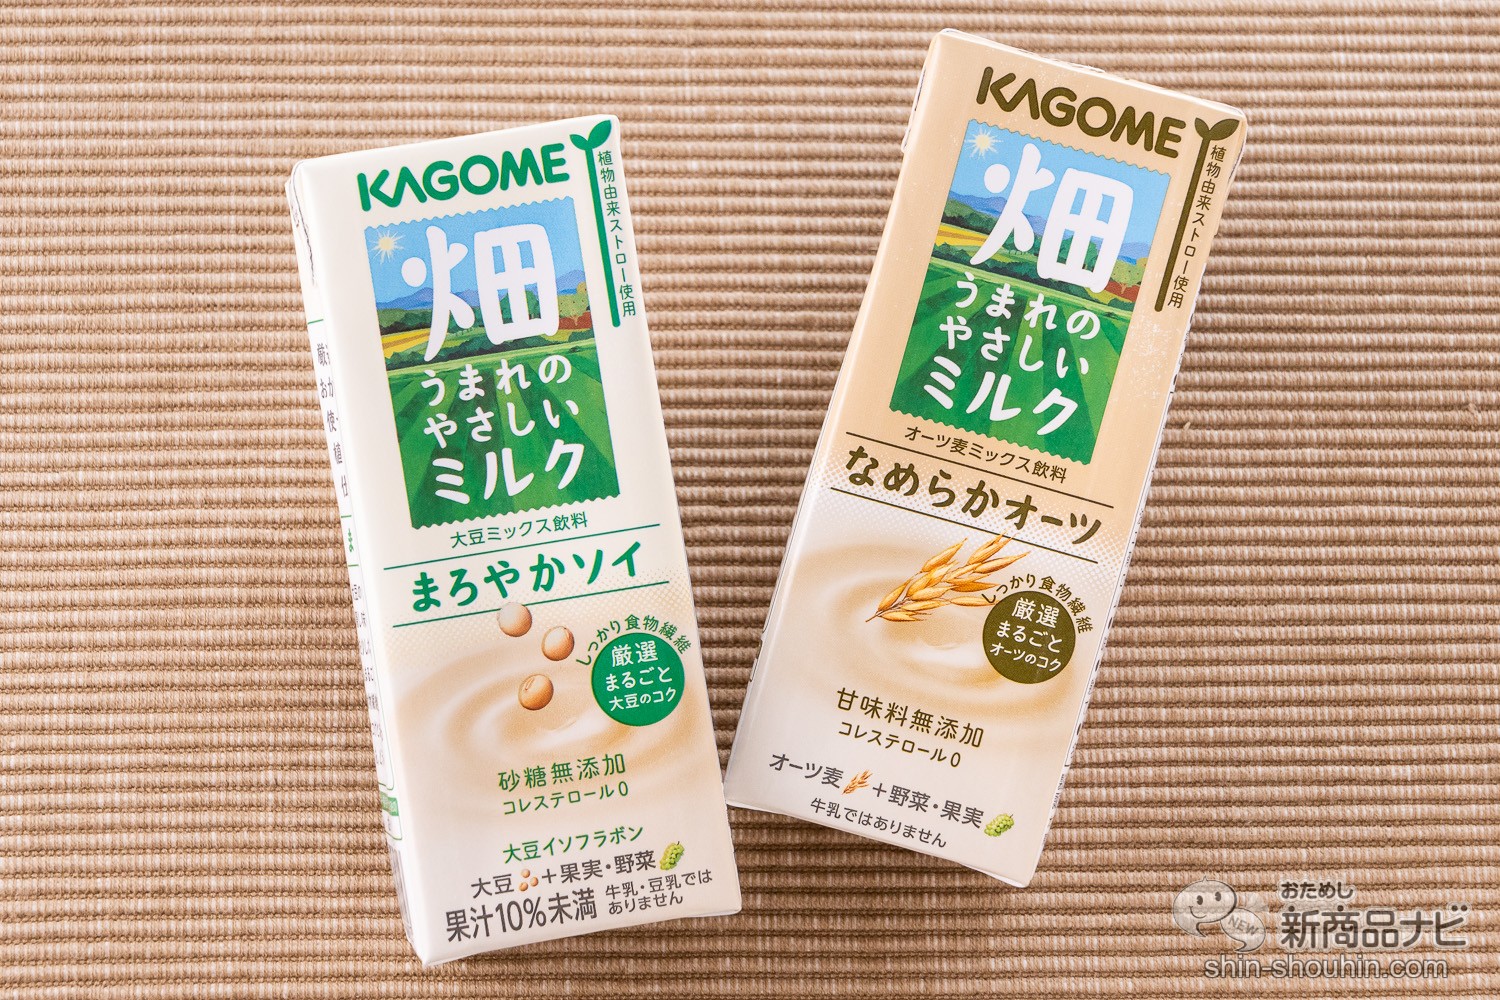 450円 アイテム勢ぞろい KAGOME ①大豆ミックス飲料まろやかソイ②オーツ麦ミックス飲料なめらかオーツ